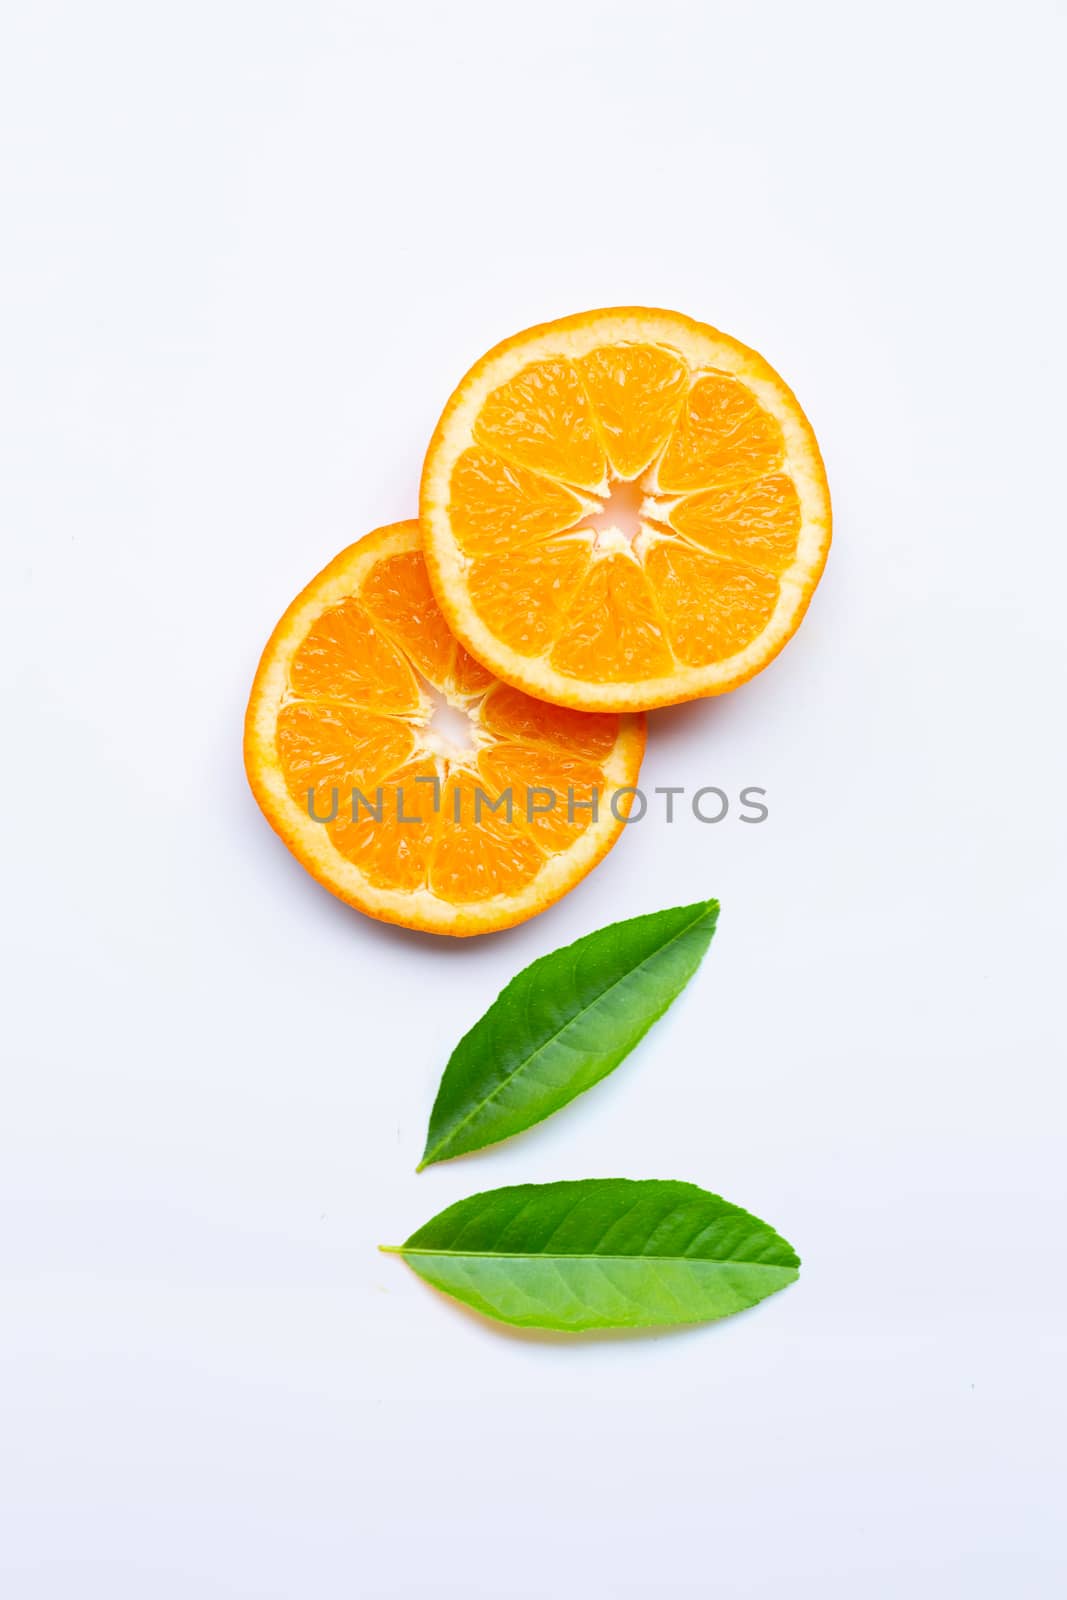 Fresh orange citrus fruits  on white background.